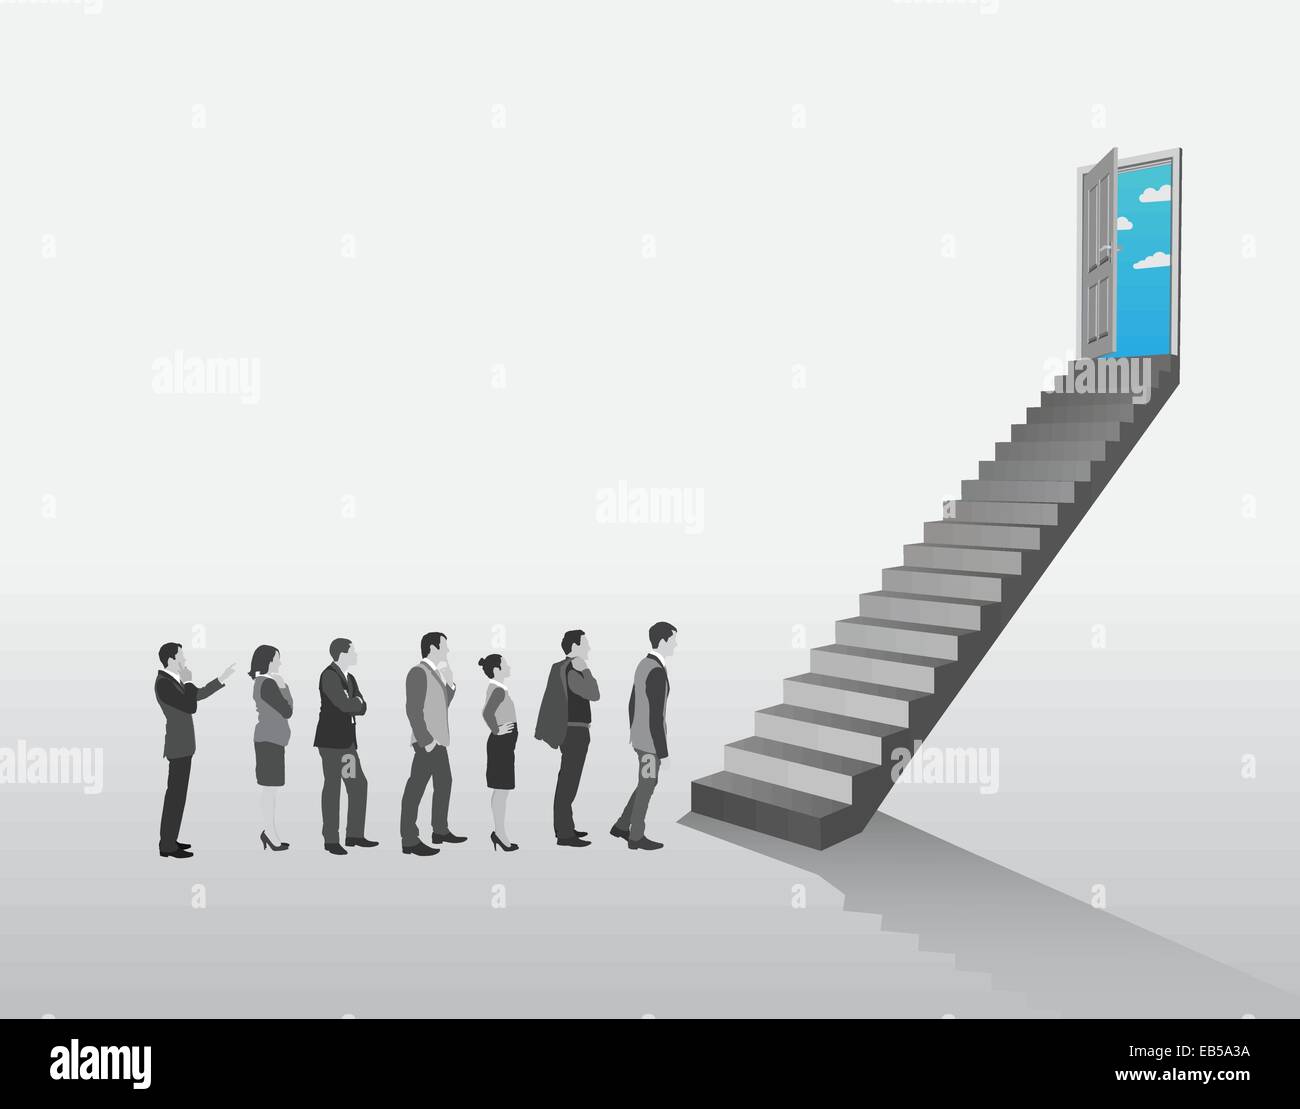 Les gens d'affaires en attente de monter un escalier Illustration de Vecteur